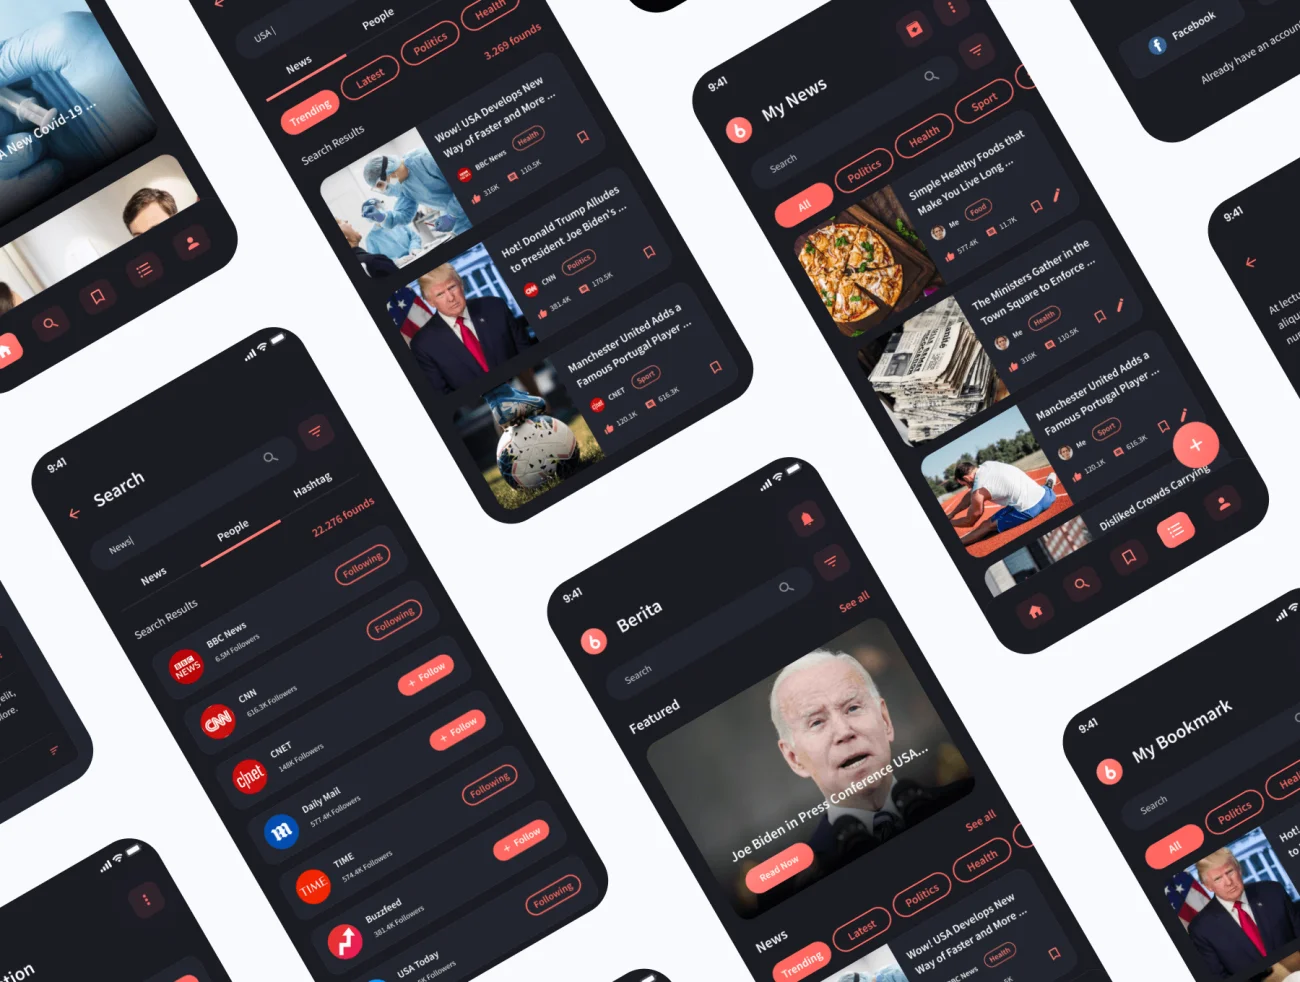 140屏新闻和阅读器应用程序UI设计套件 Berita – News & Reader App UI Kit .figma插图9